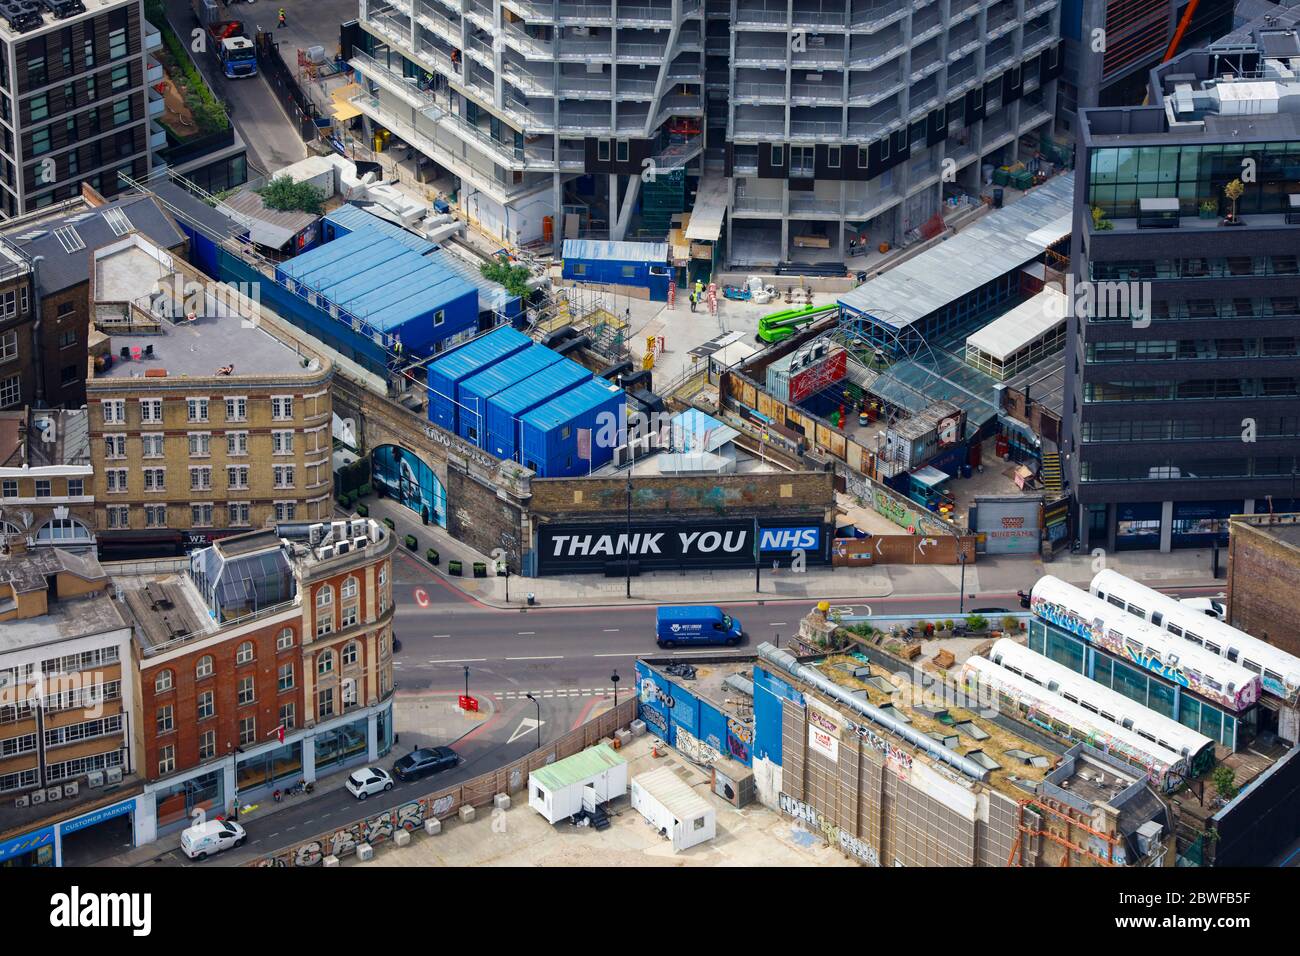 Vista aérea de un sitio de construcción de Londres con el cartel "Gracias NHS" Foto de stock